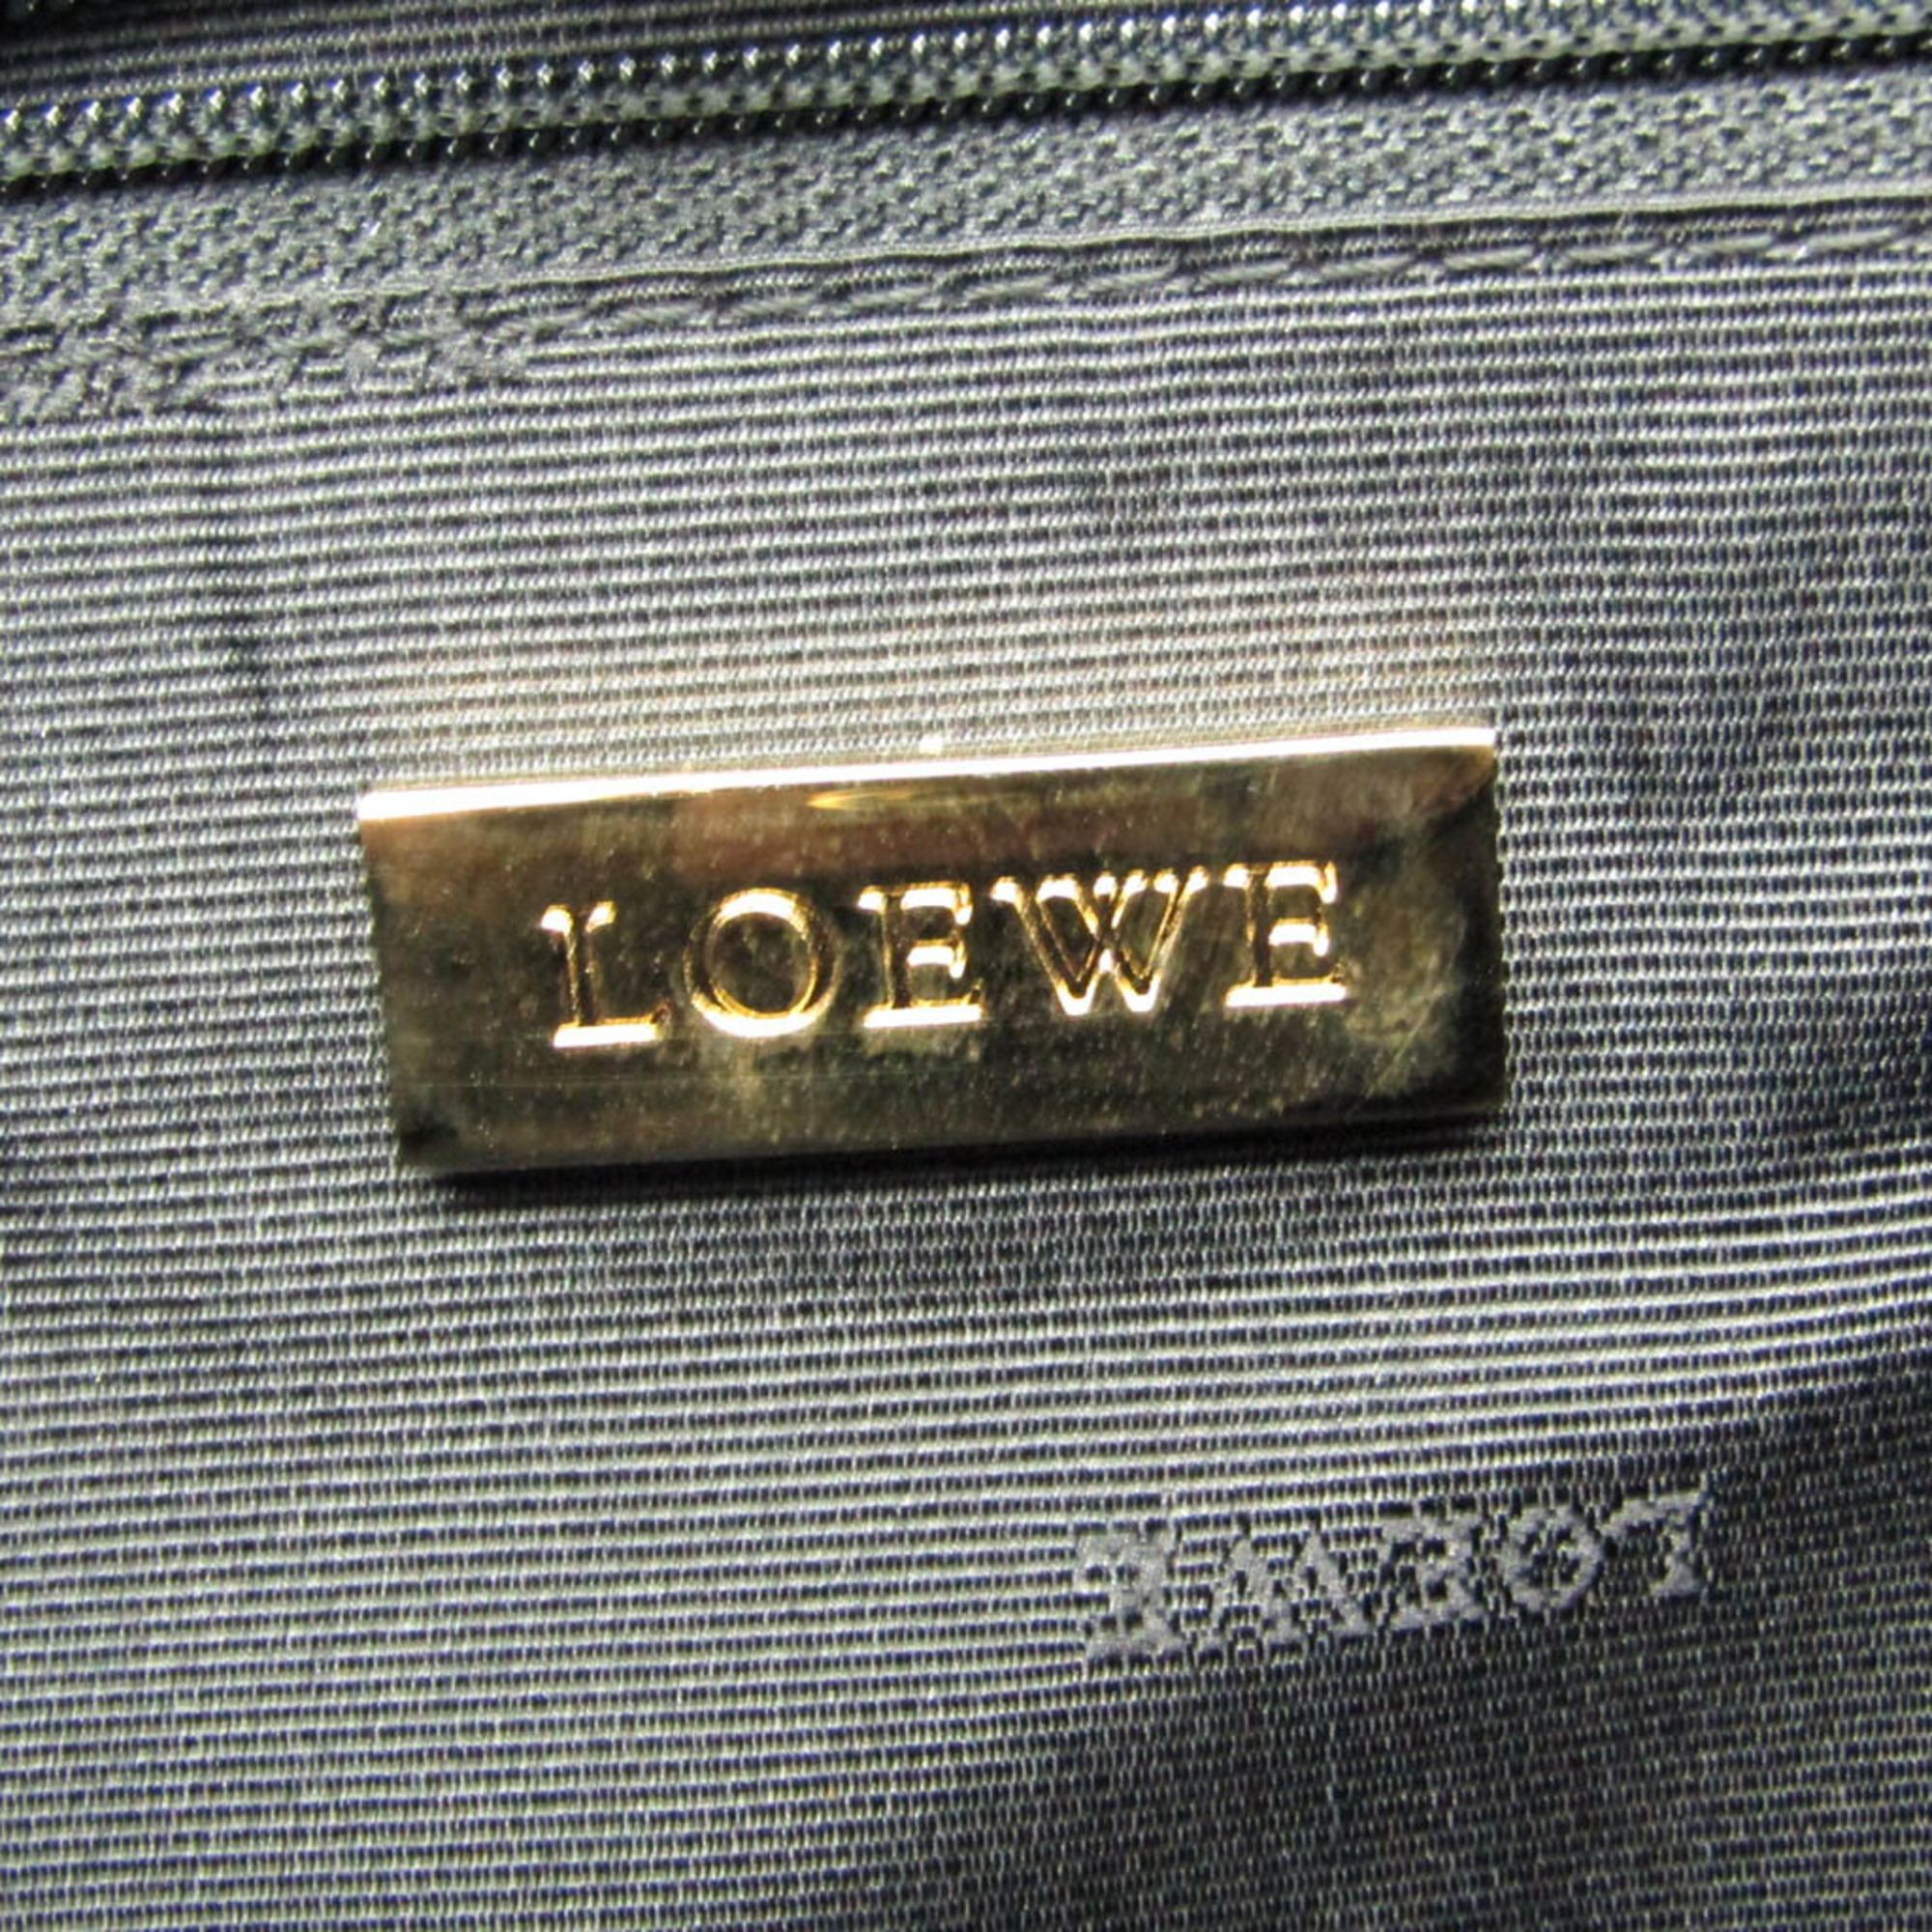 ロエベ(Loewe) レディース レザー ハンドバッグ メタリックブラウン